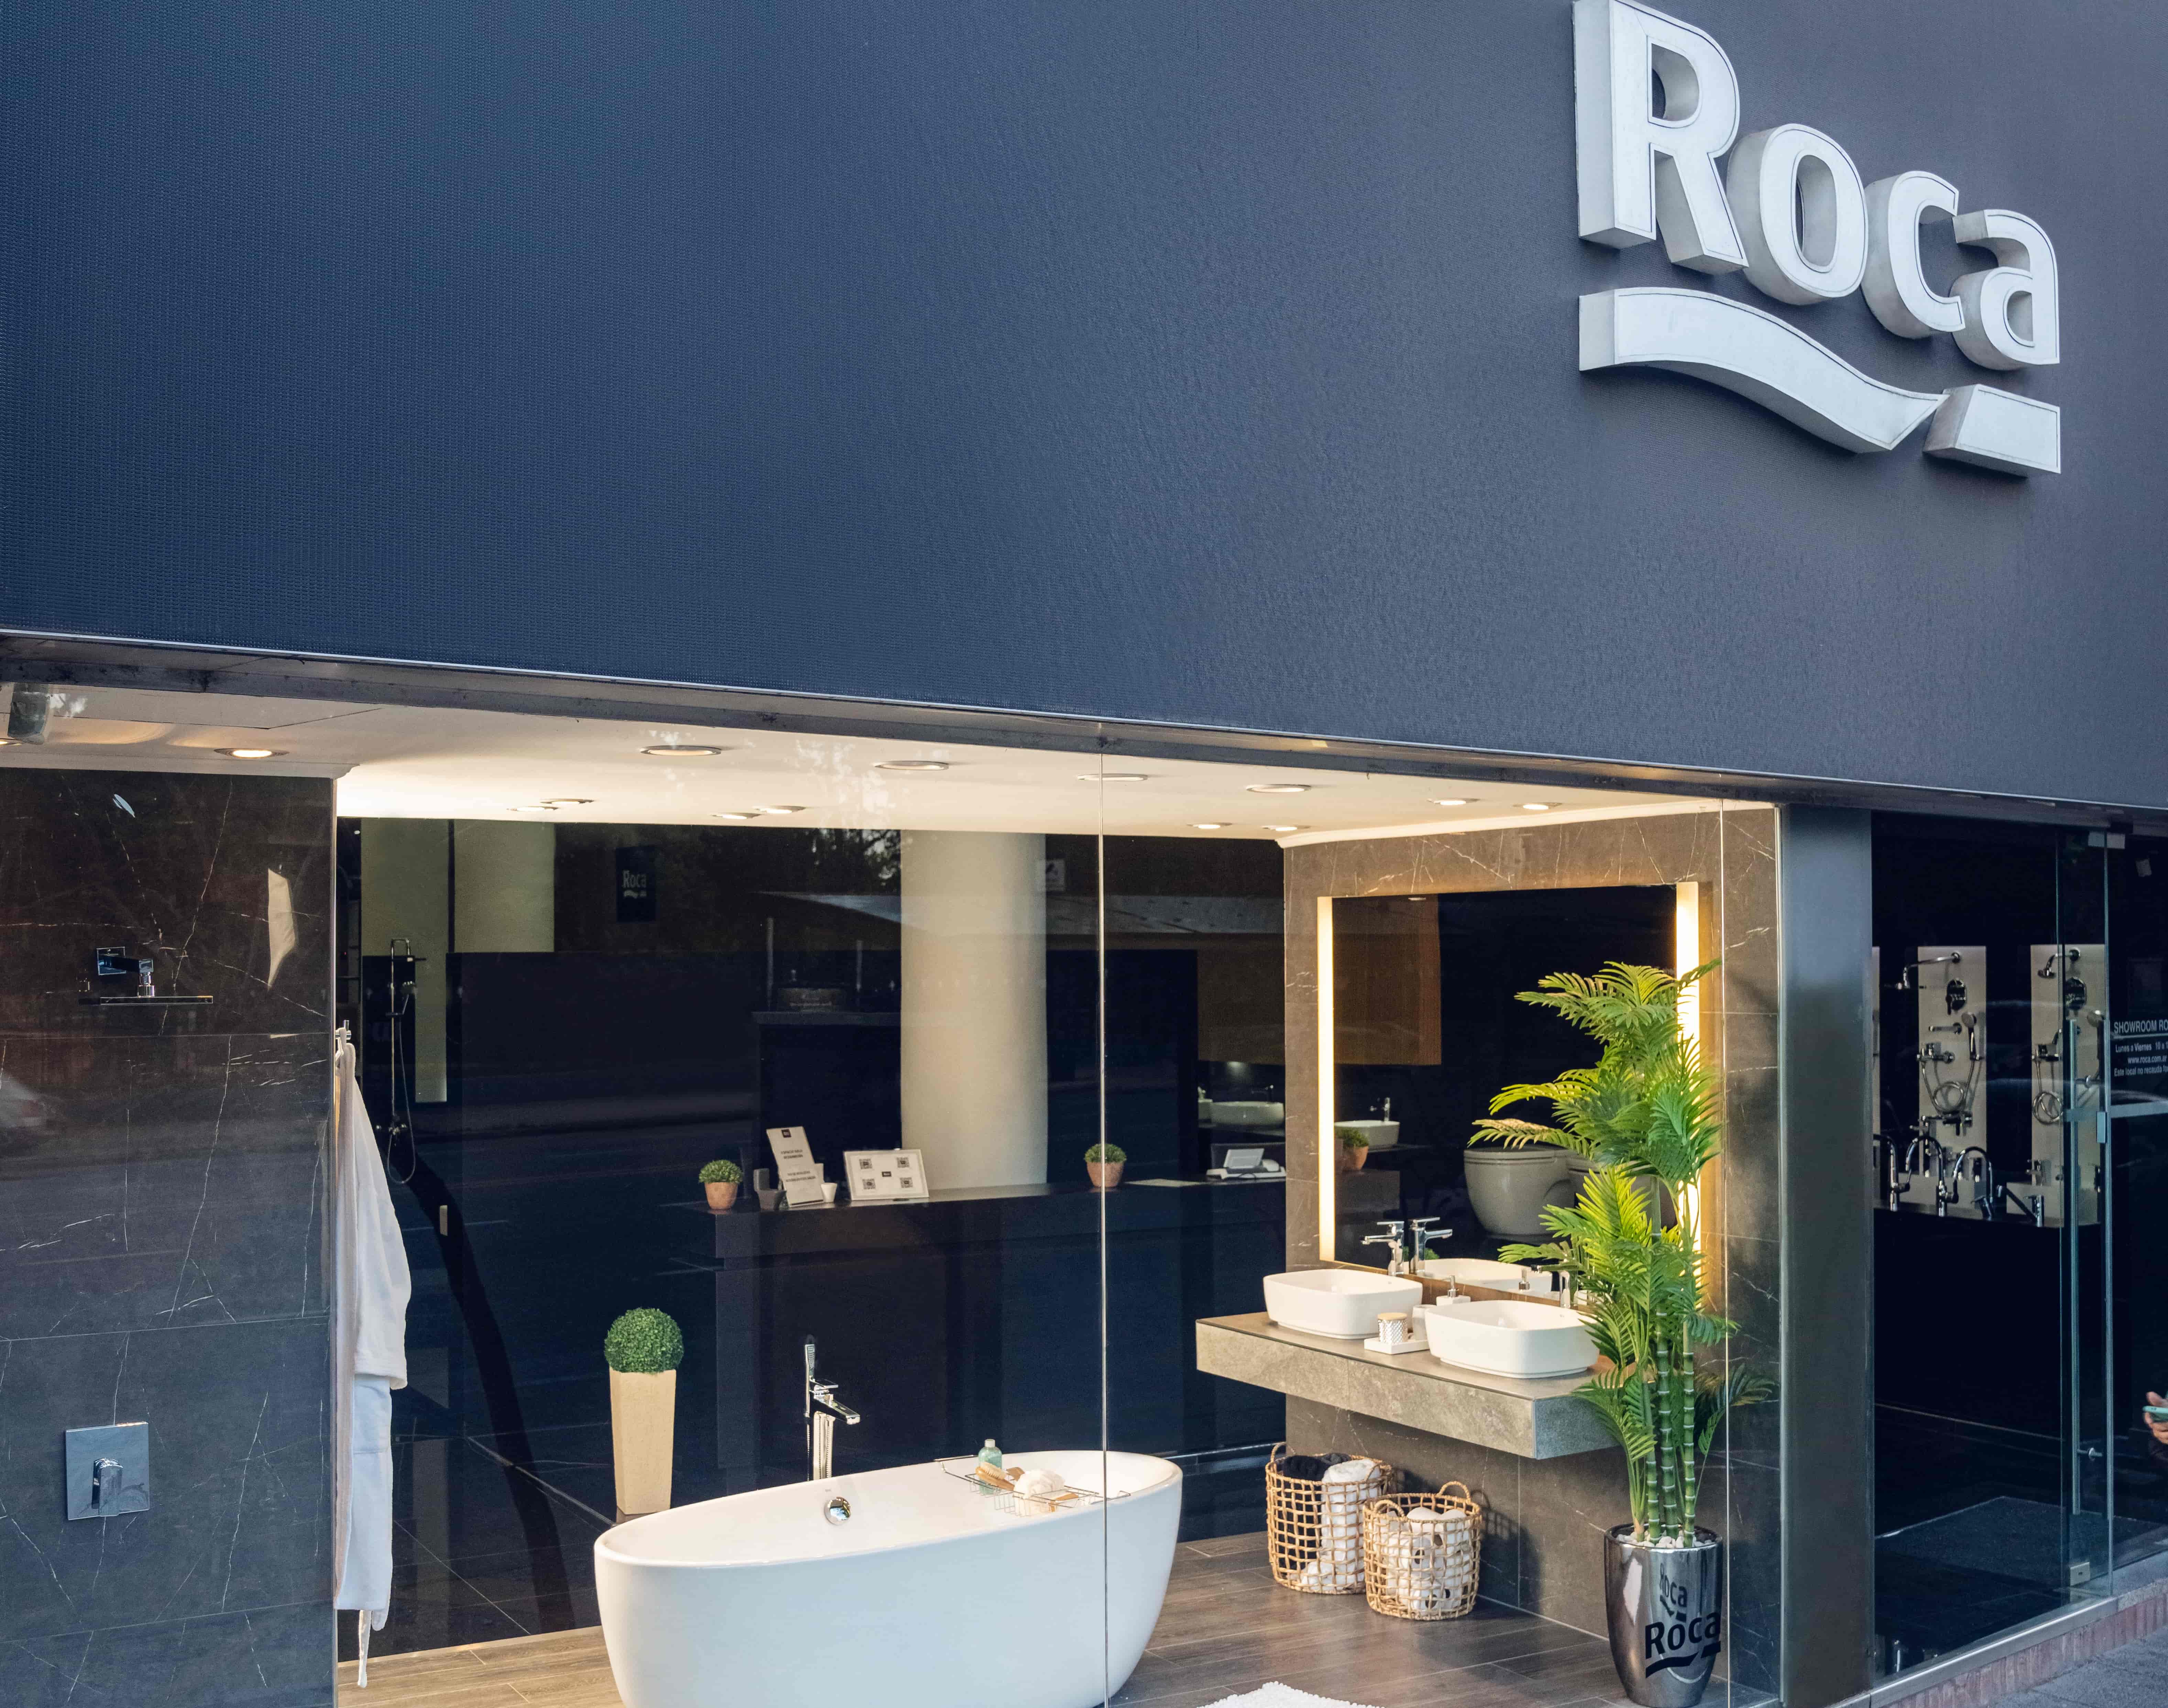 <p>Roca se ha convertido en el primer fabricante de cuartos de baño que abre un showroom en la ciudad de Buenos Aires.</p>